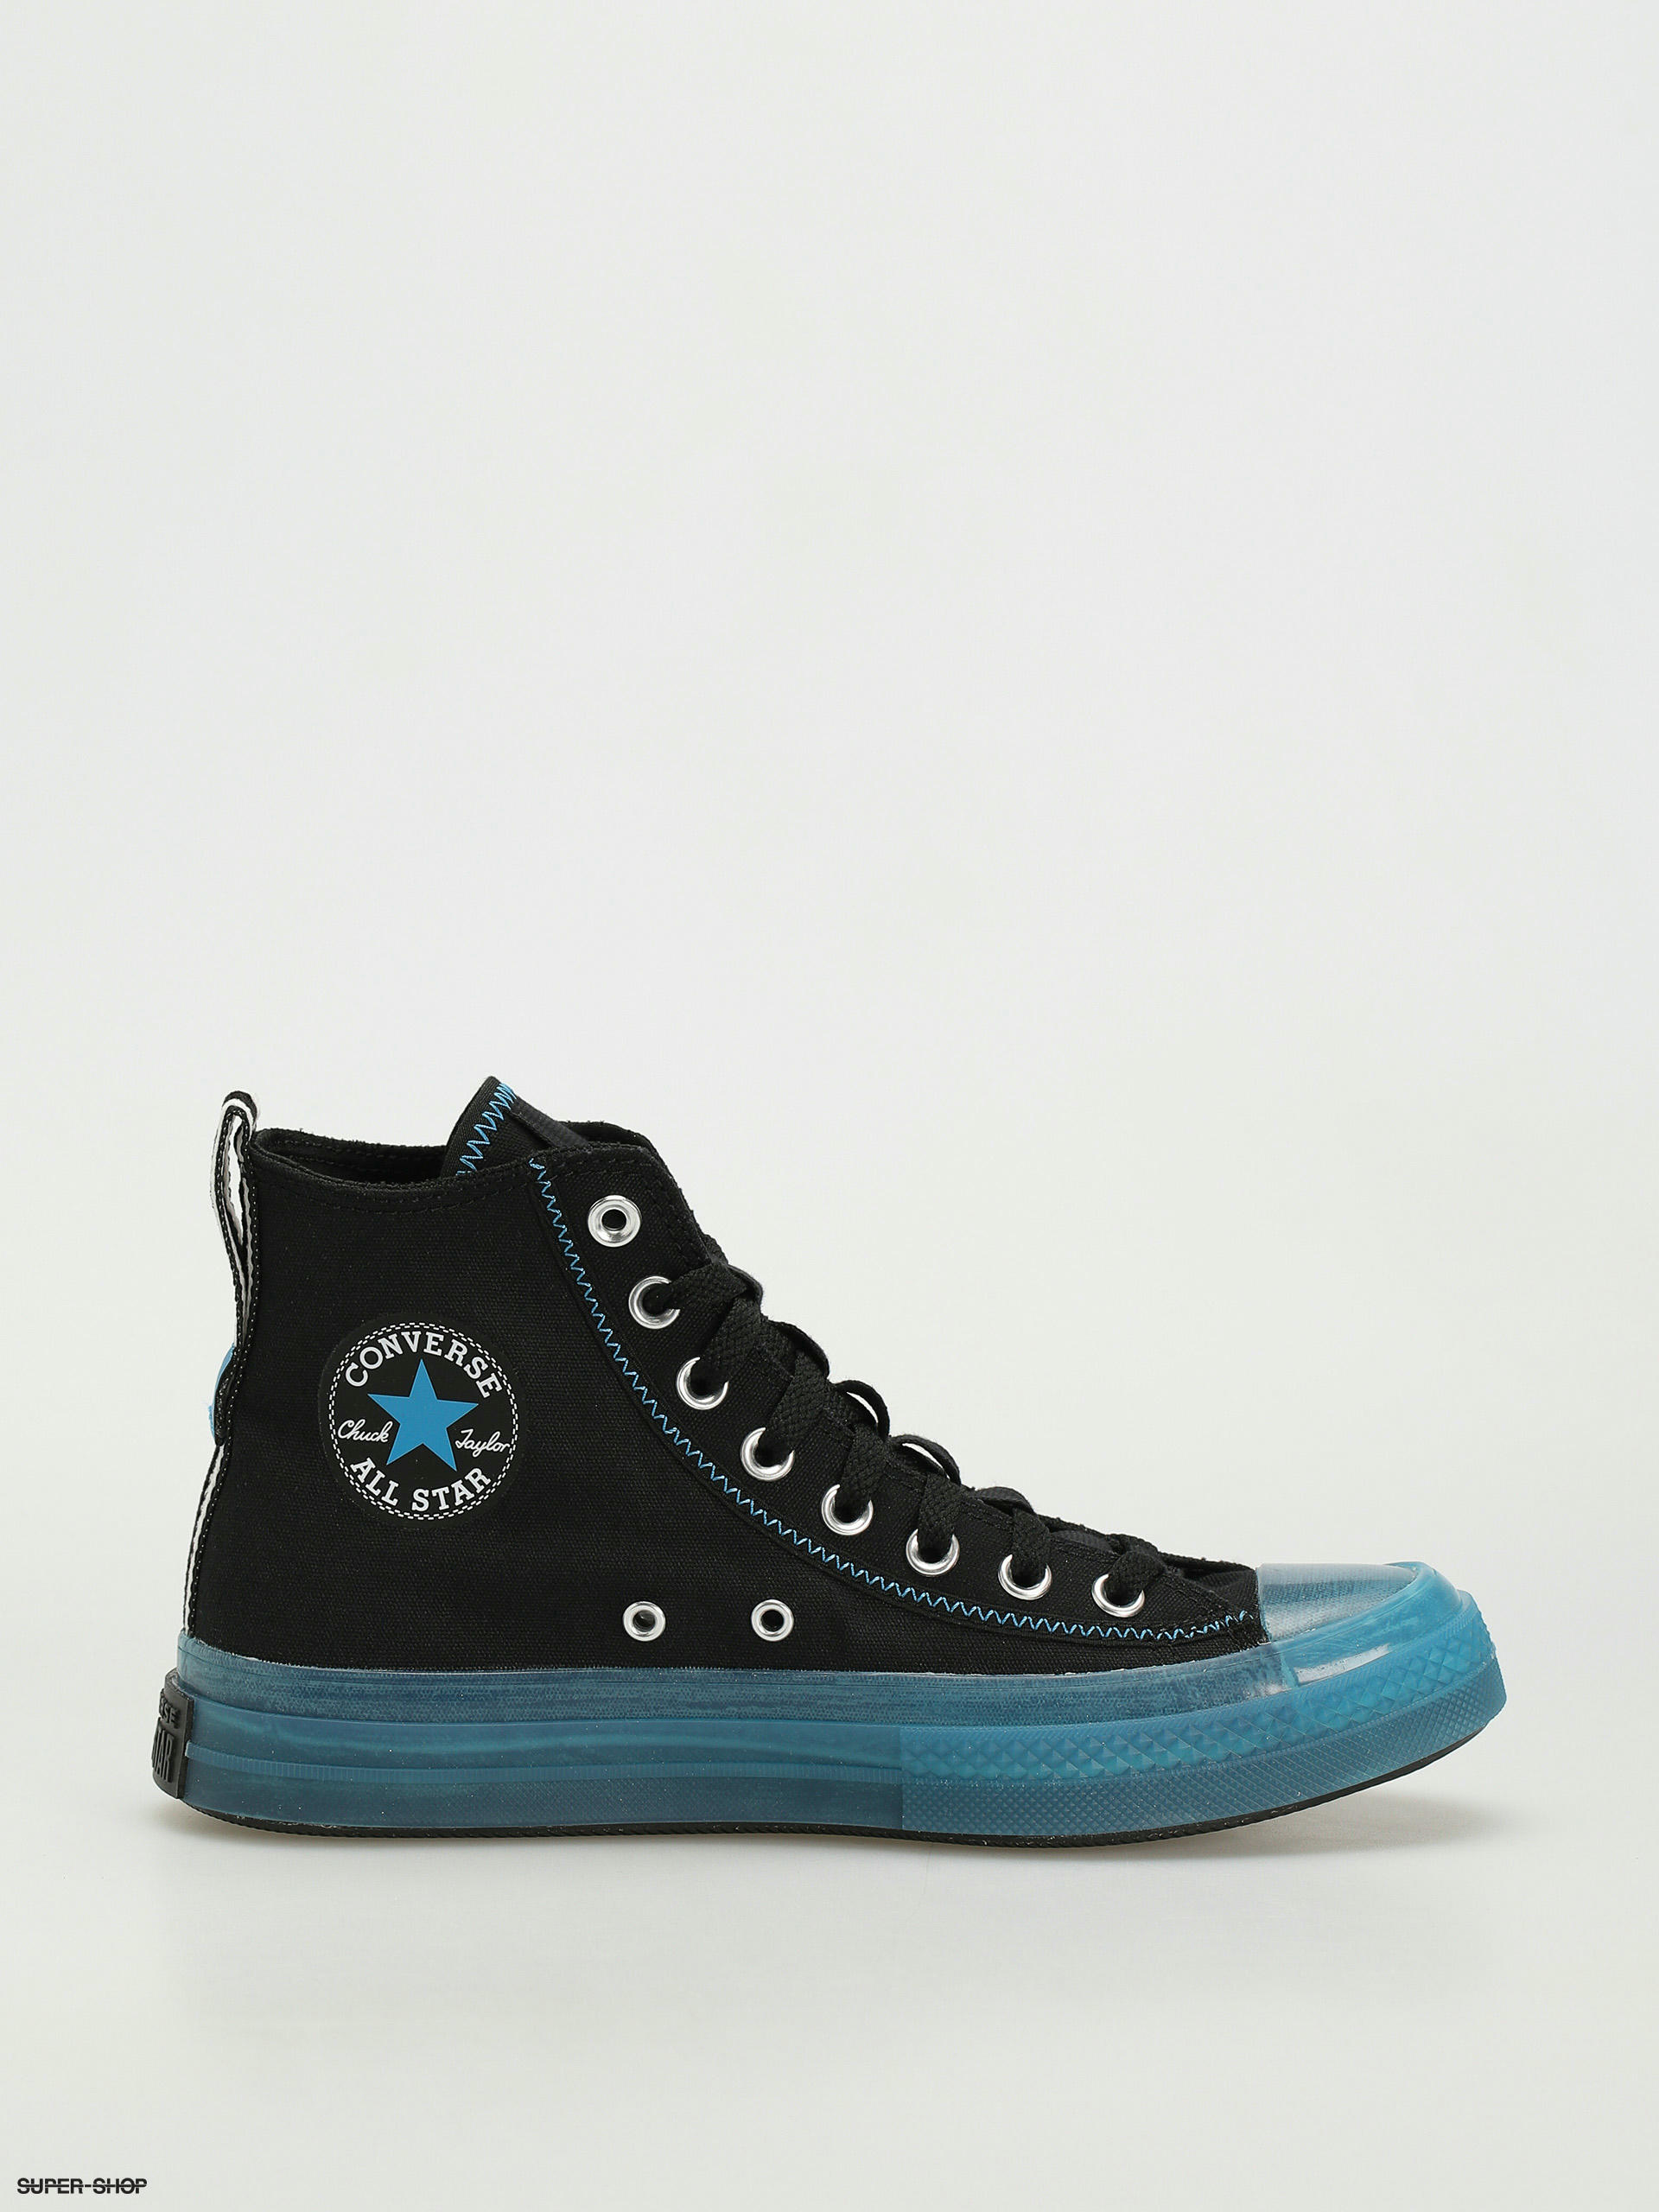 Converse Chuck Taylor Star Explore Hi Shoes up blue)